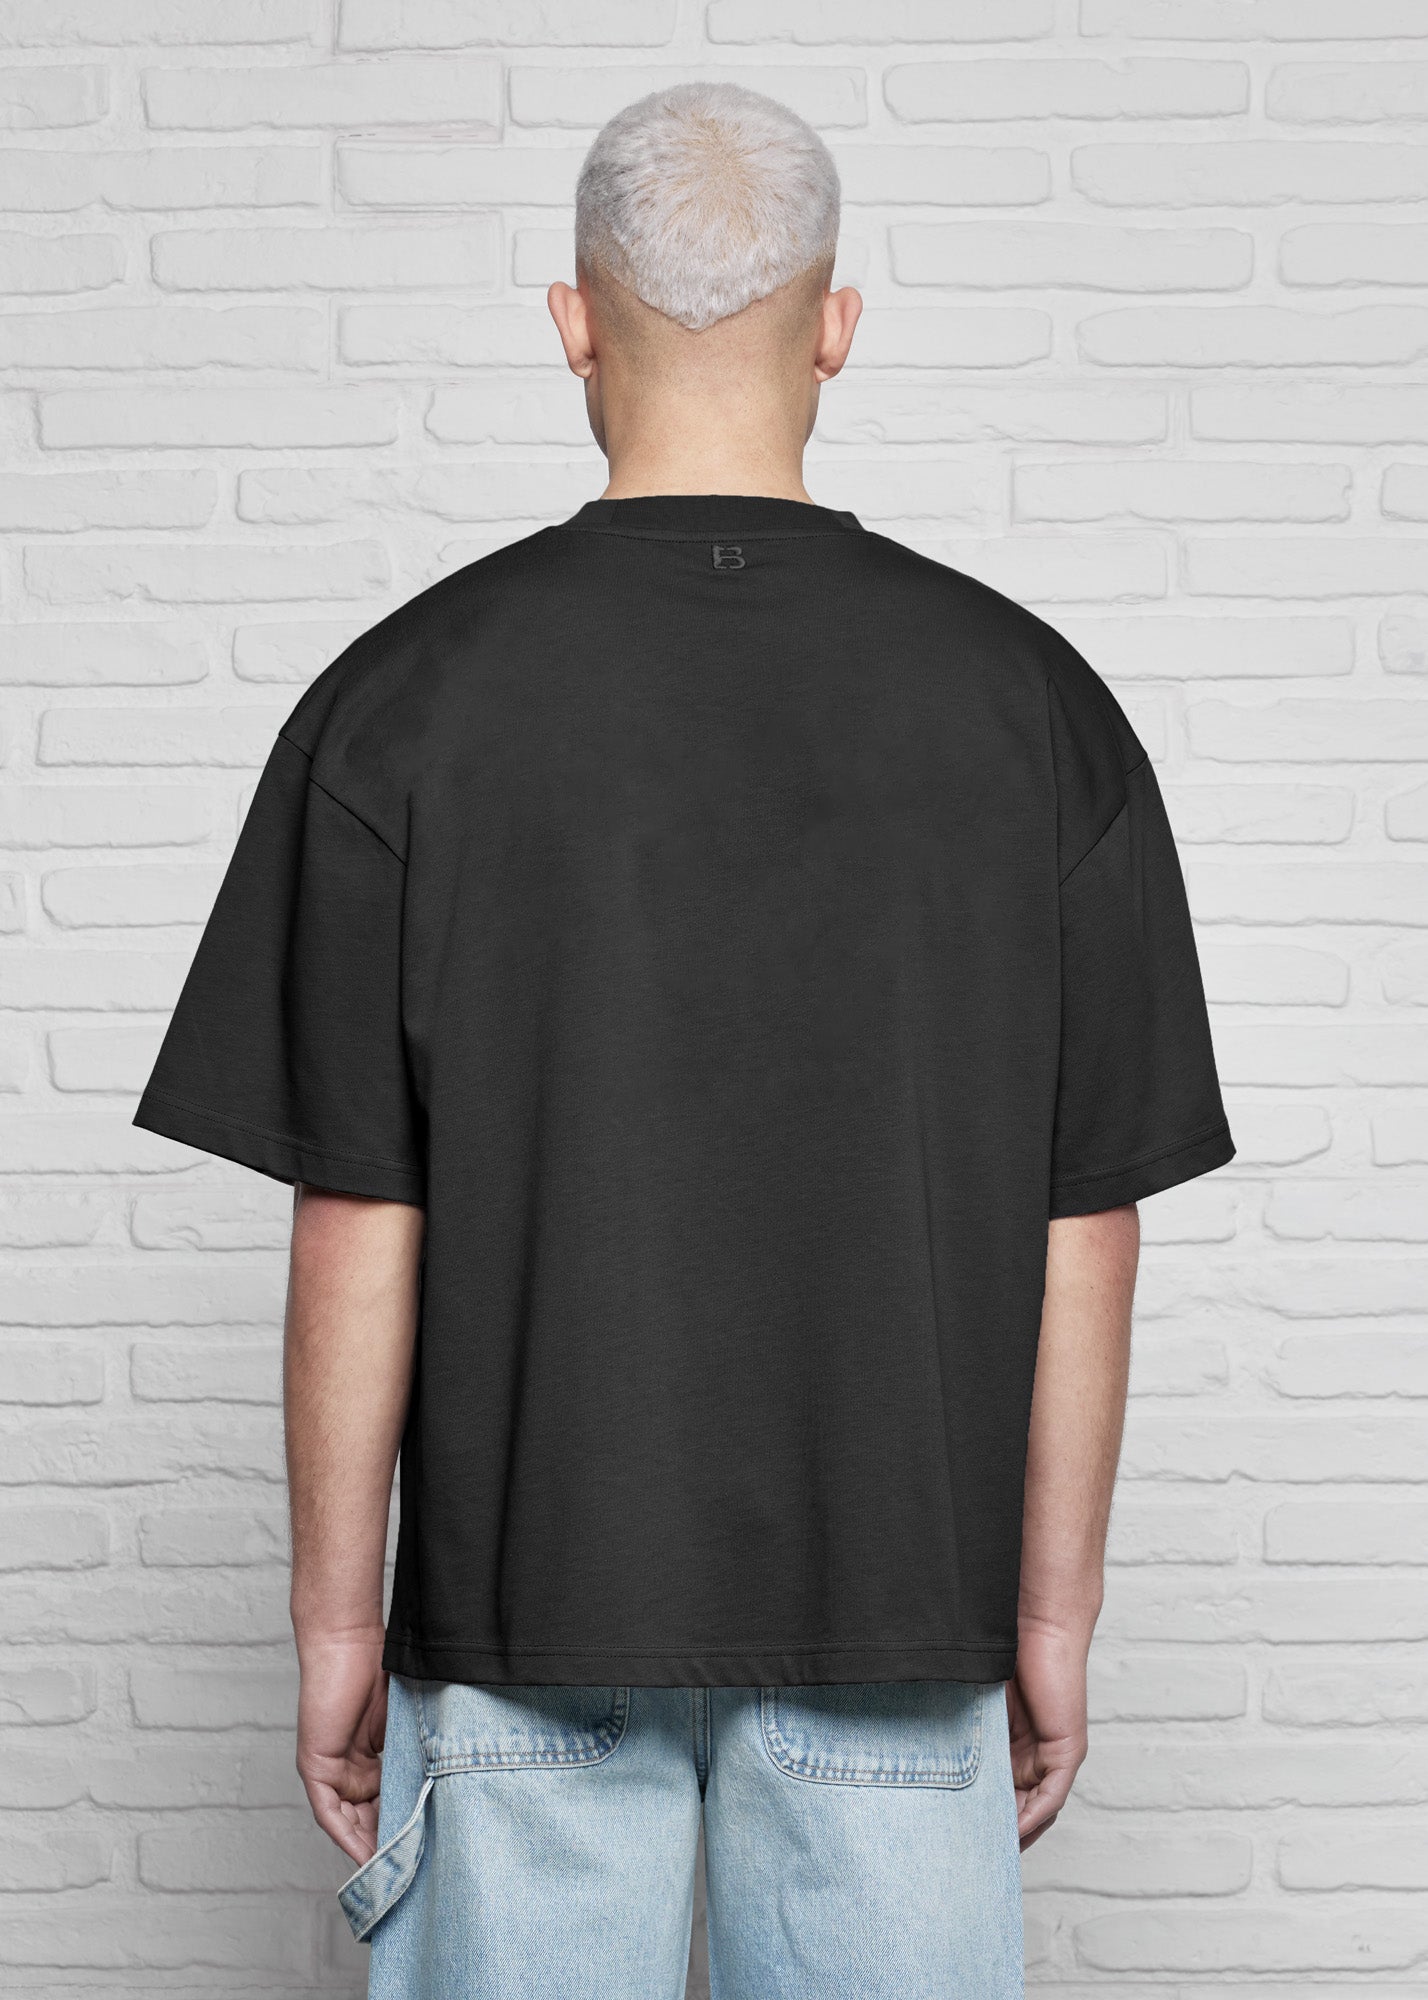 Black Basic Oversized T-Shirt